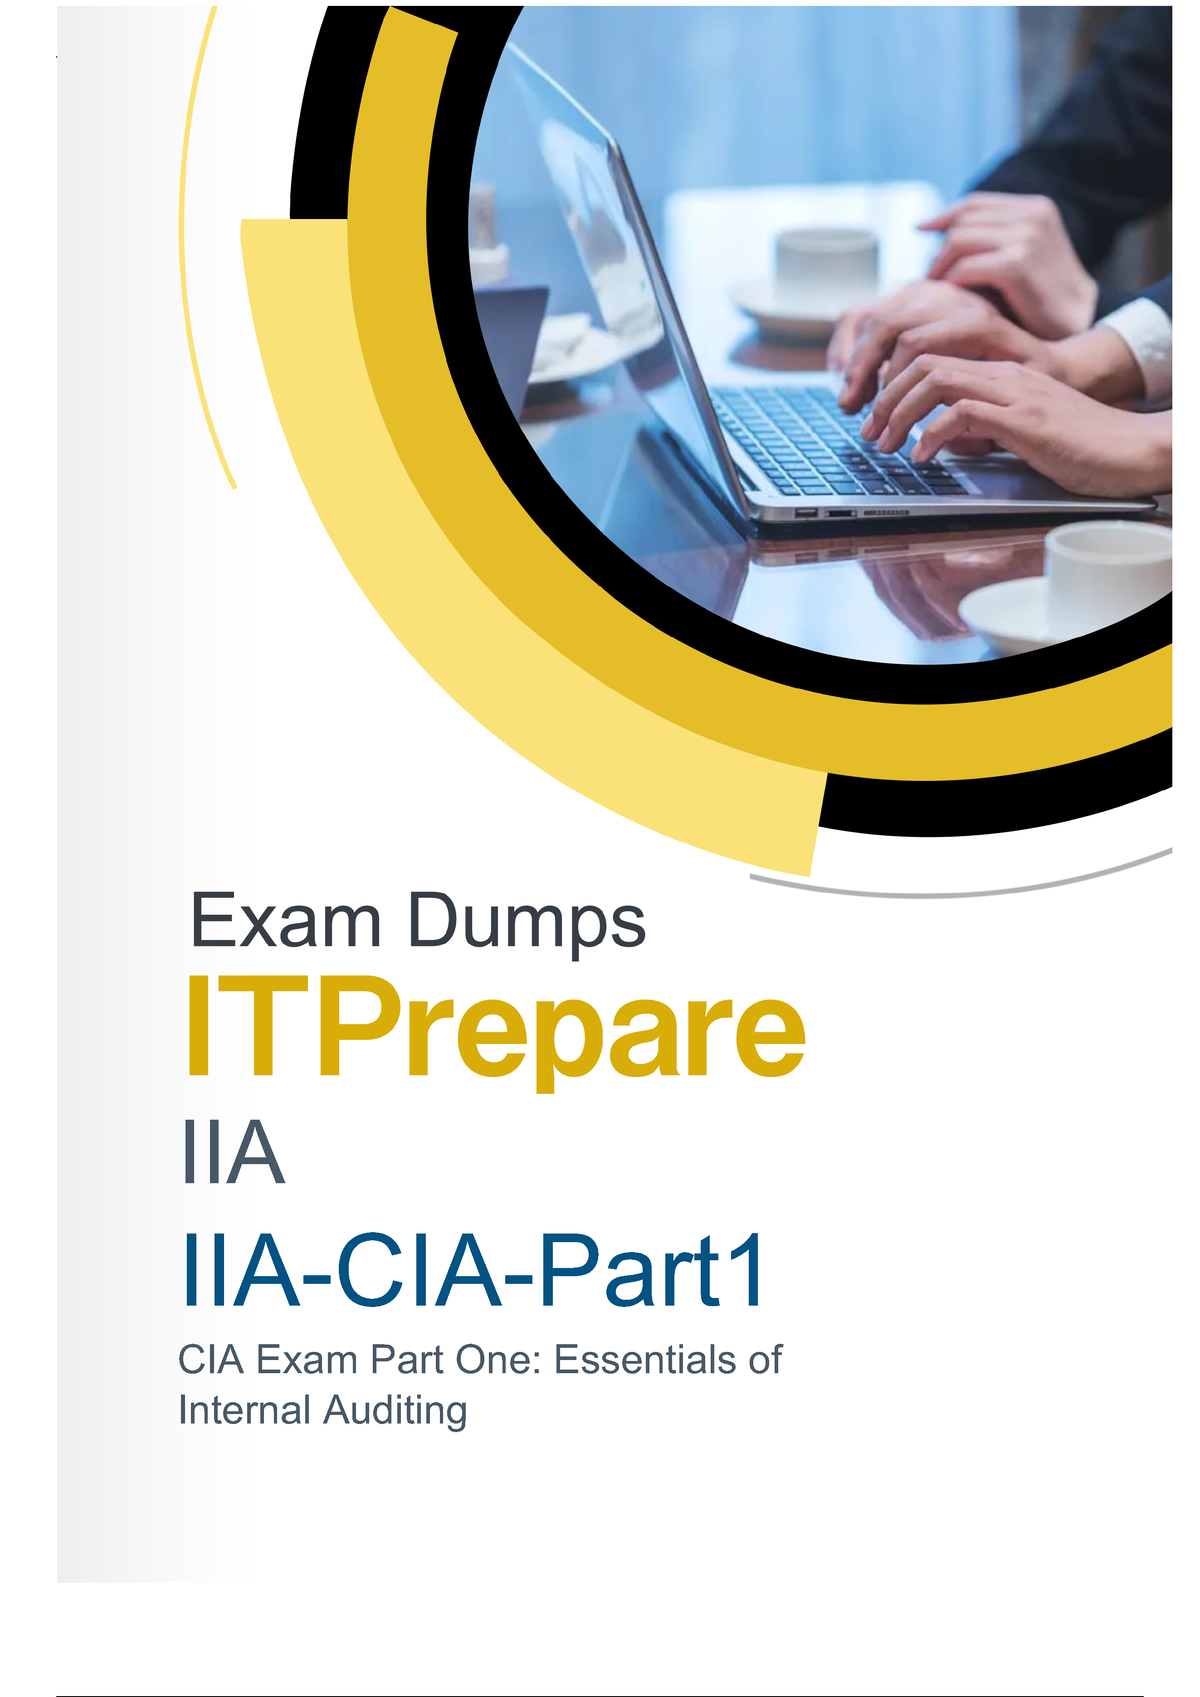 New IIA-CIA-Part1 Exam Dumps